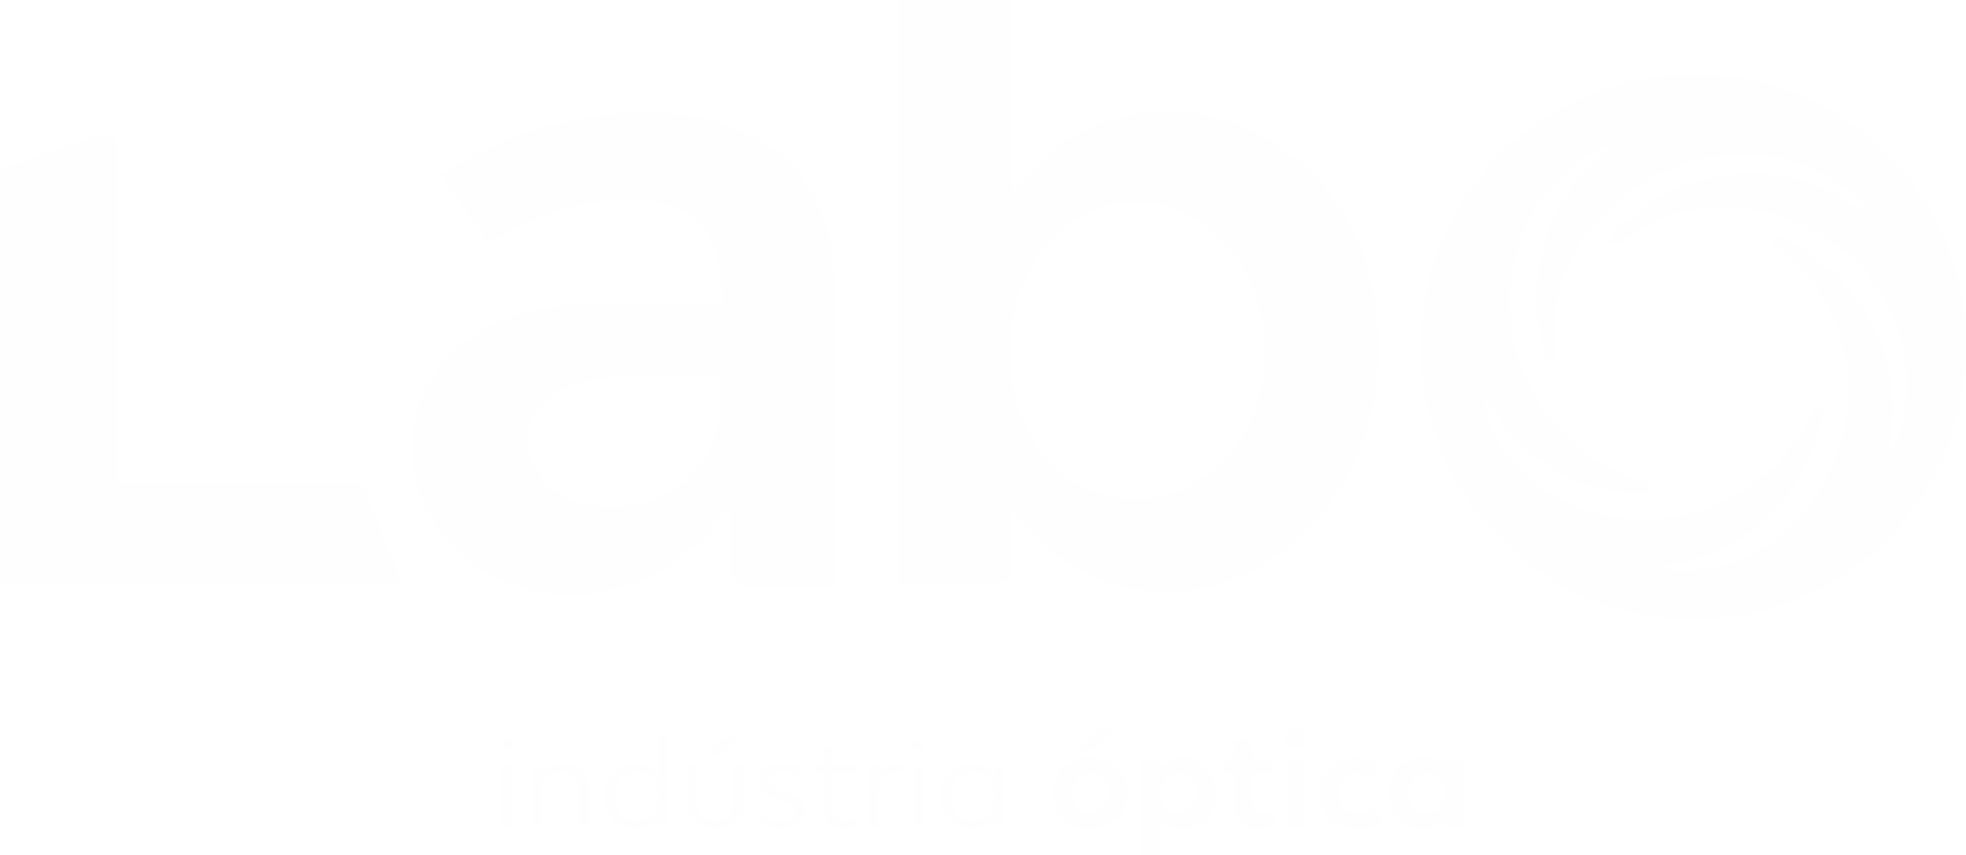 Labo Indústria Óptica - O maior laboratório óptico da Região Norte